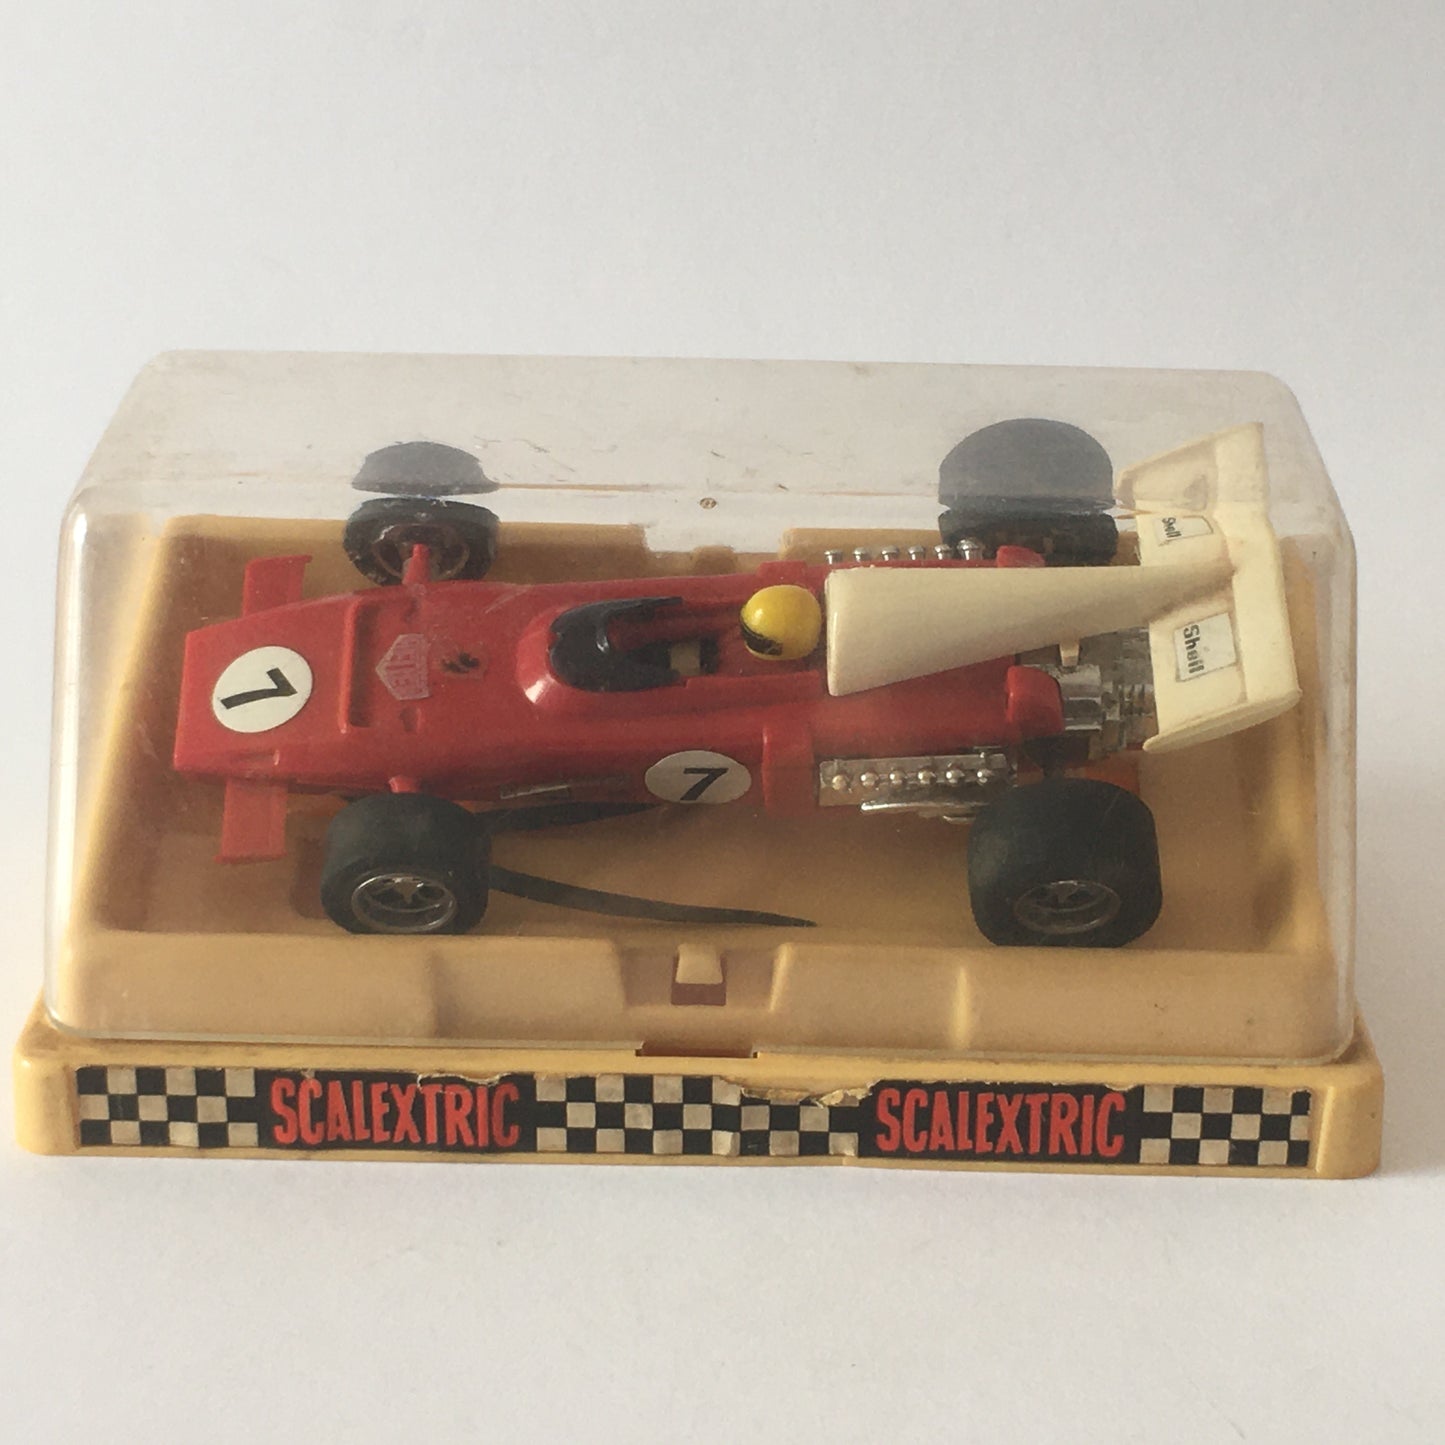 Ferrari, Modellino Scalextric C25 Ferrari 312 B2, Slot Car in Perfette Condizioni, con Manuale Istruzioni  e Box Originale